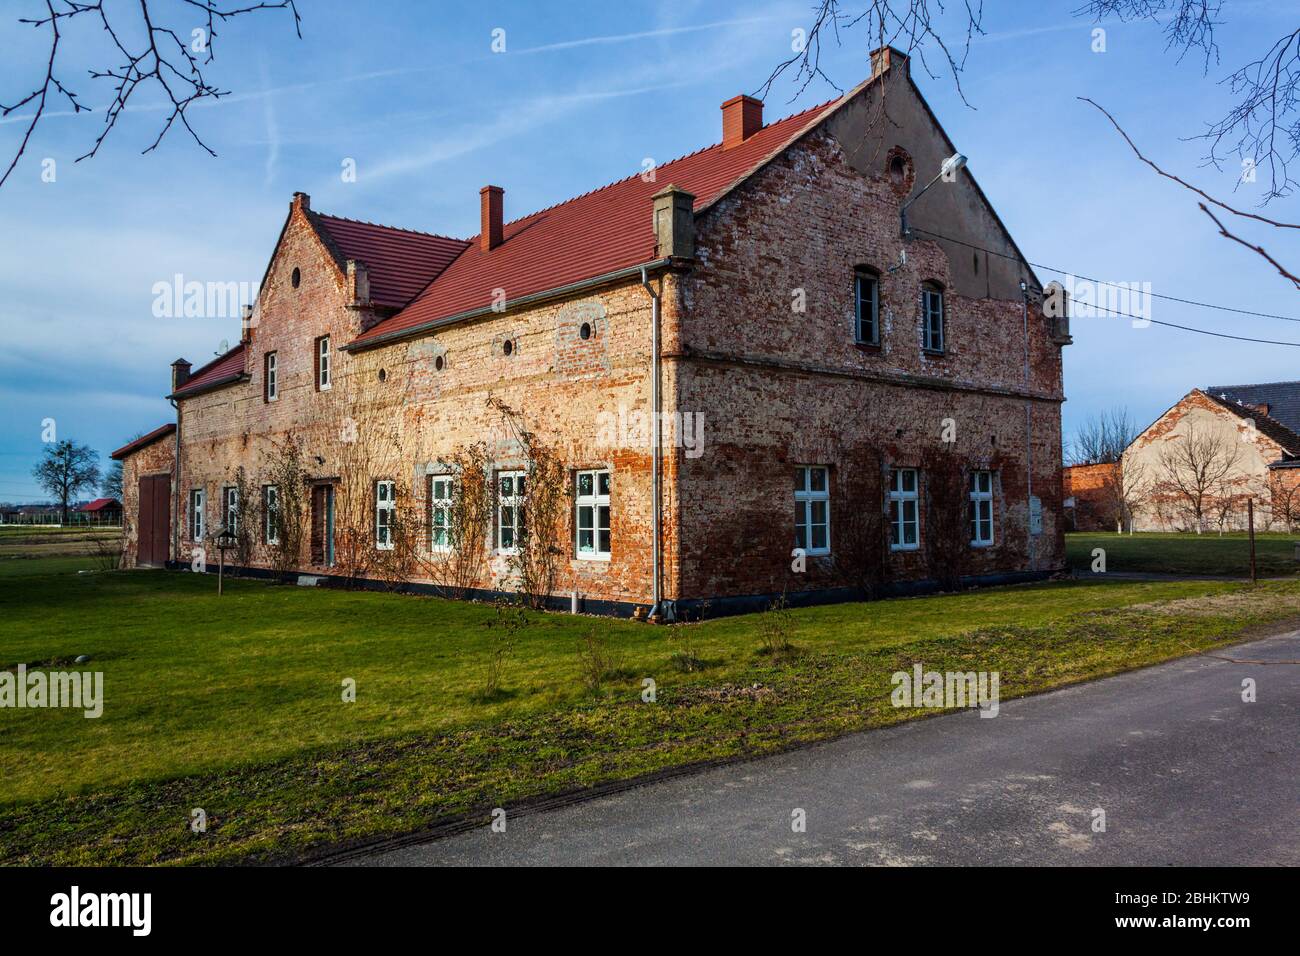 06.02.2016 Budynek mieszklany przy palacu von Wartenburg w Sliwicach Stock Photo